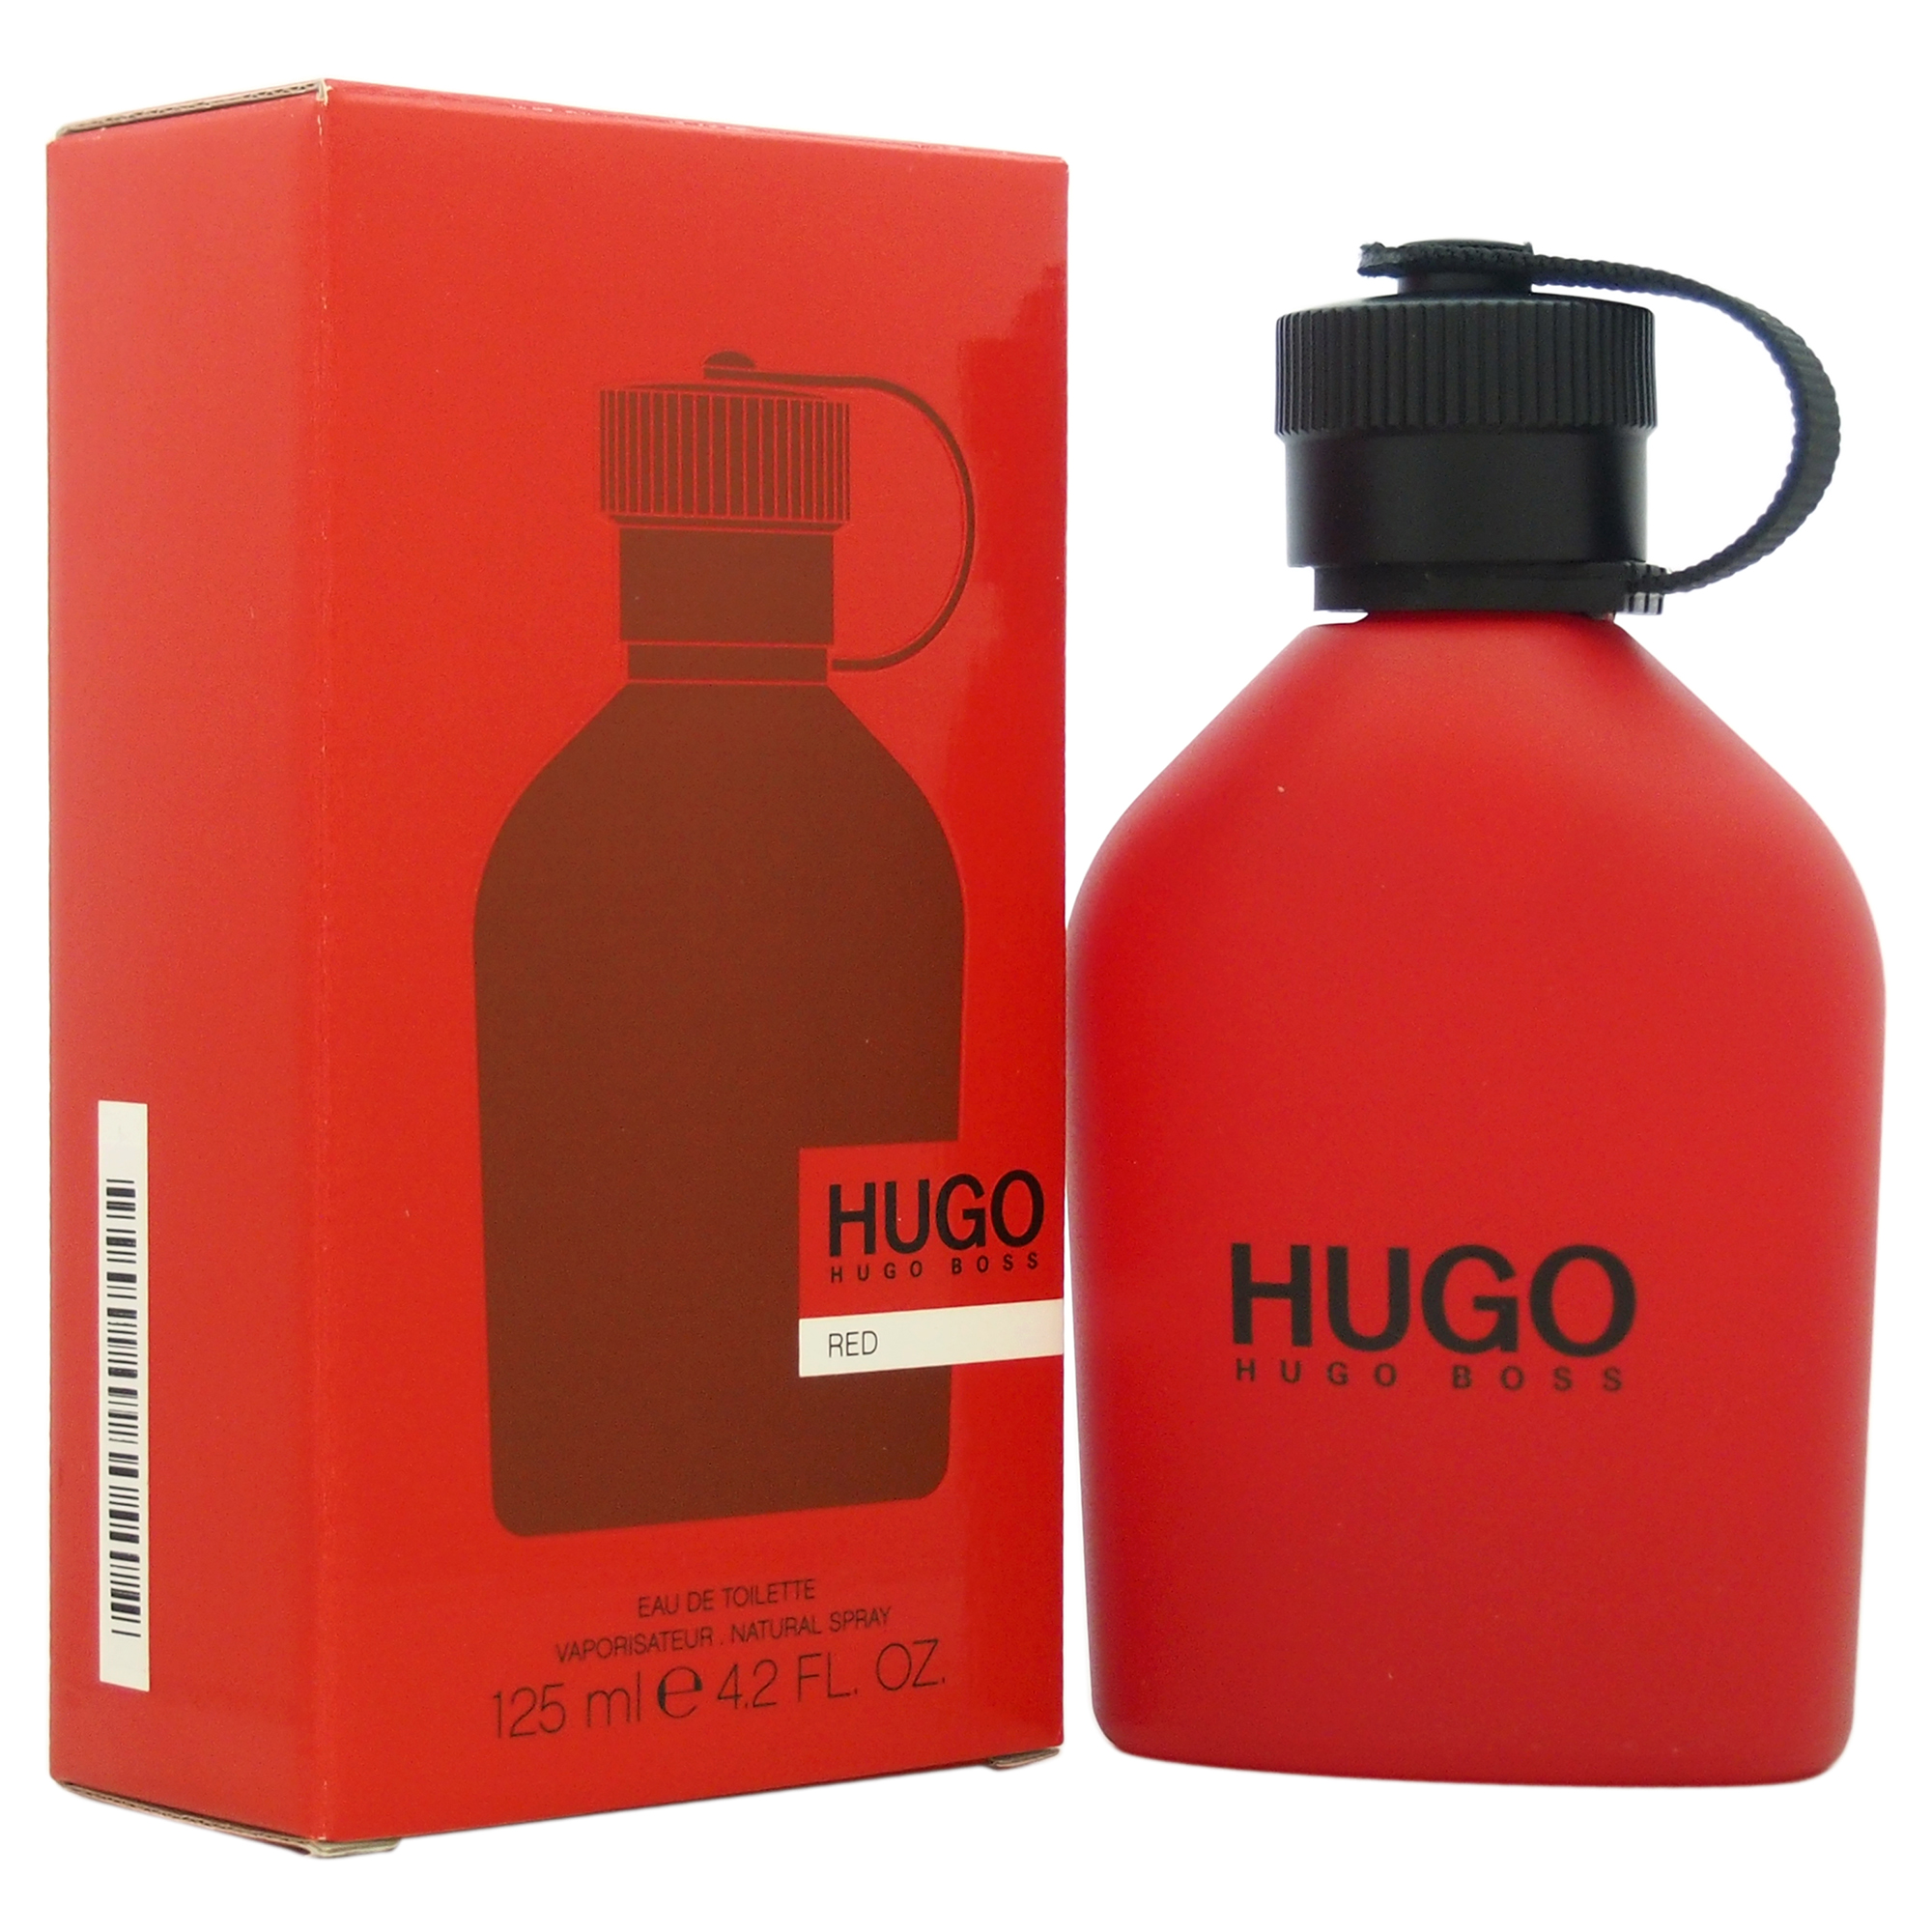 Хуго босс ред. Хьюго босс ред. Hugo Boss Hugo Red. Хуго босс рыжий. Hugo Boss кроссовки мужские красные.